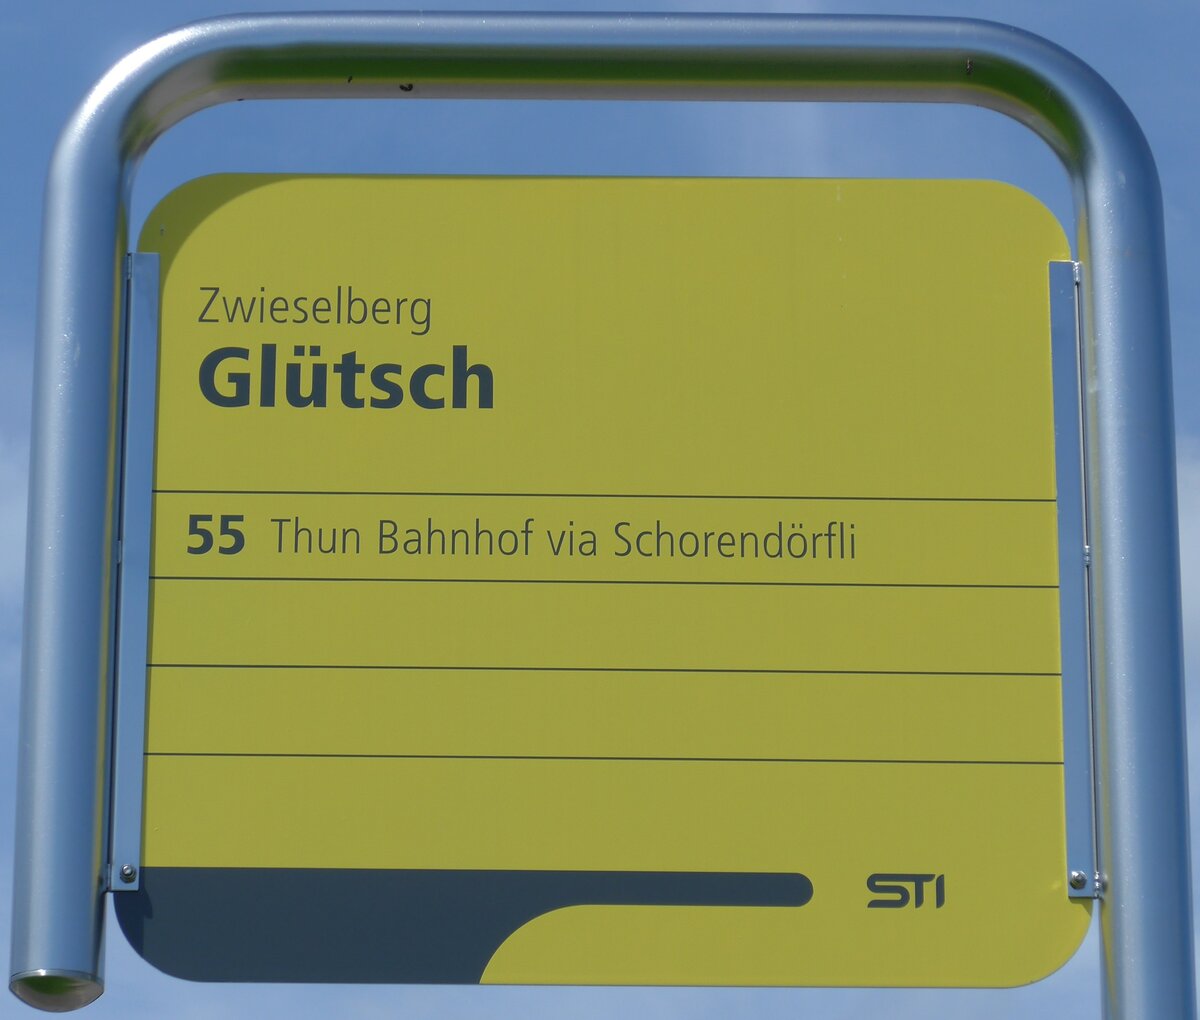 (153'967) - STI-Haltestellenschild - Zwieselberg, Gltsch - am 17. August 2014